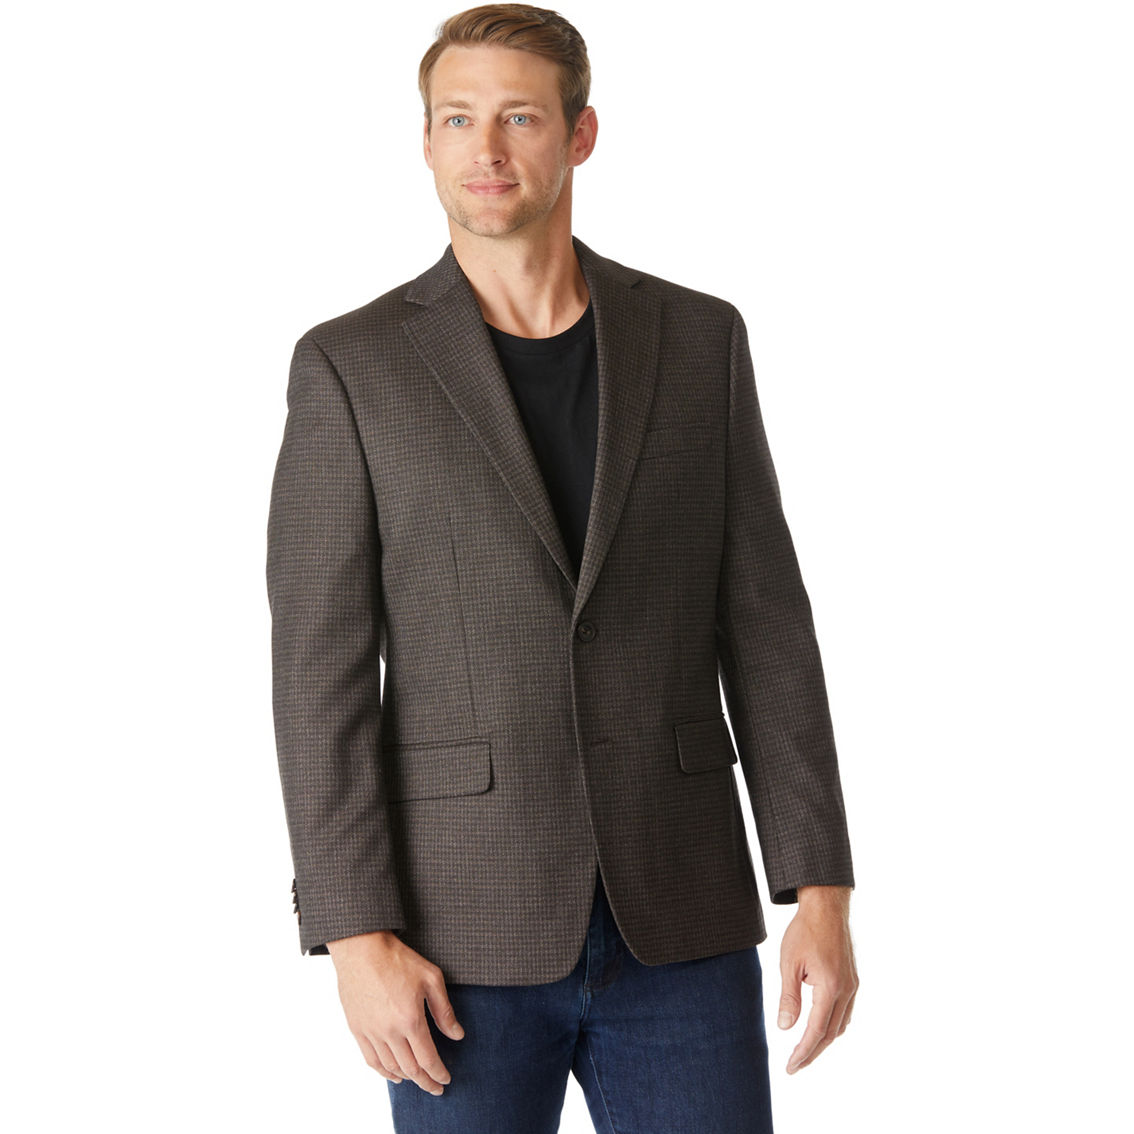 Michael Kors Classic Fit Brown Sport Coat | Suits & Suit Separates ...